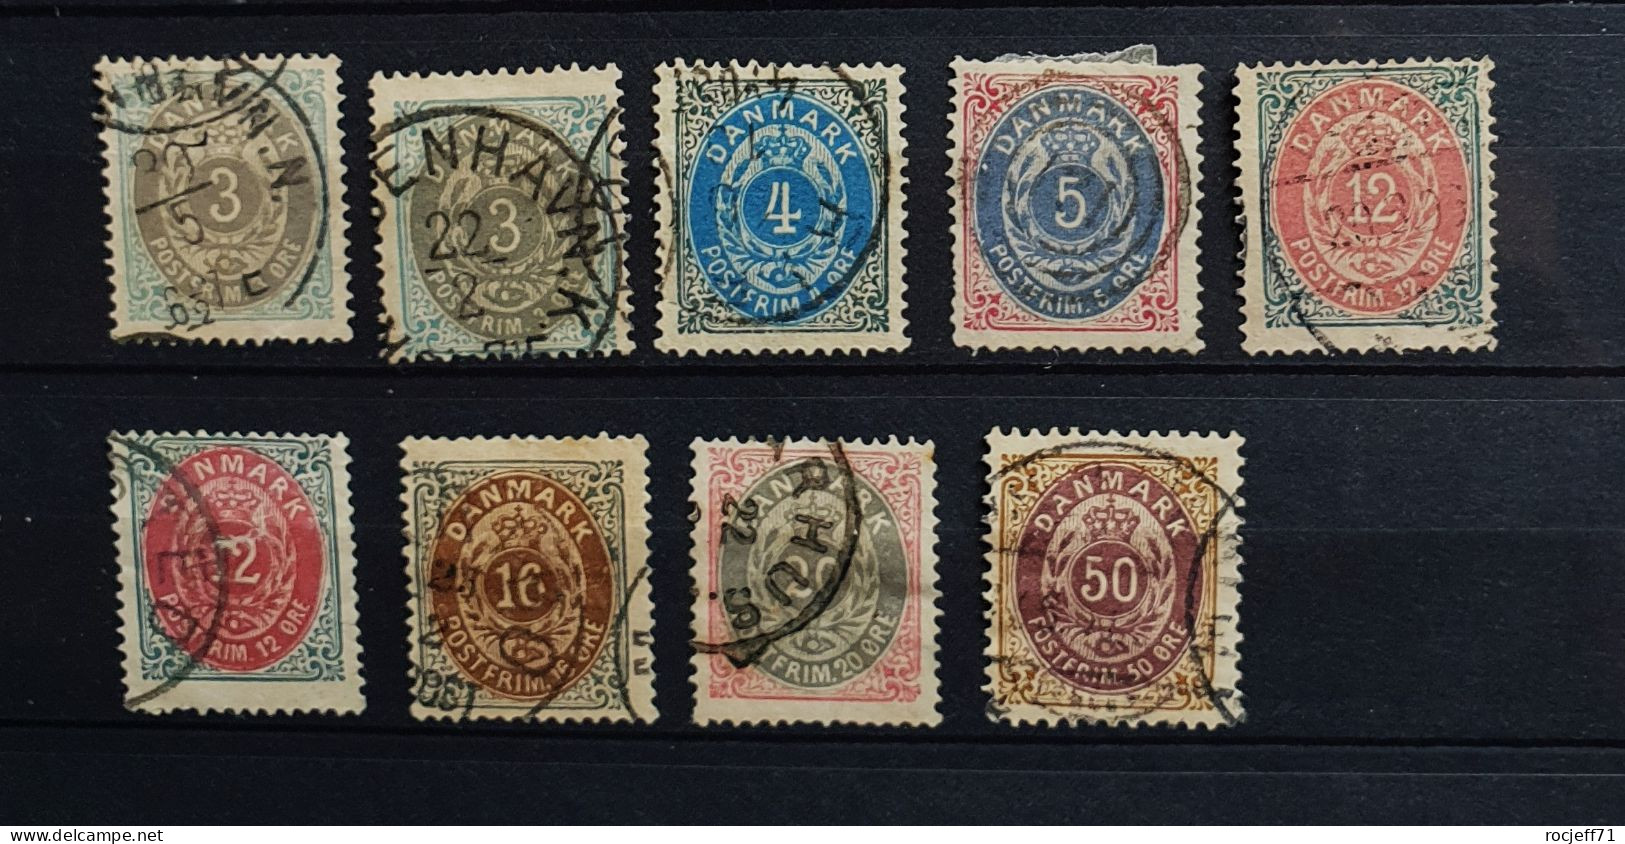 05 - 24 - Gino - Danemark - Lot De Vieux Timbres - Old Stamps  - Value : 200 Euros - Oblitérés